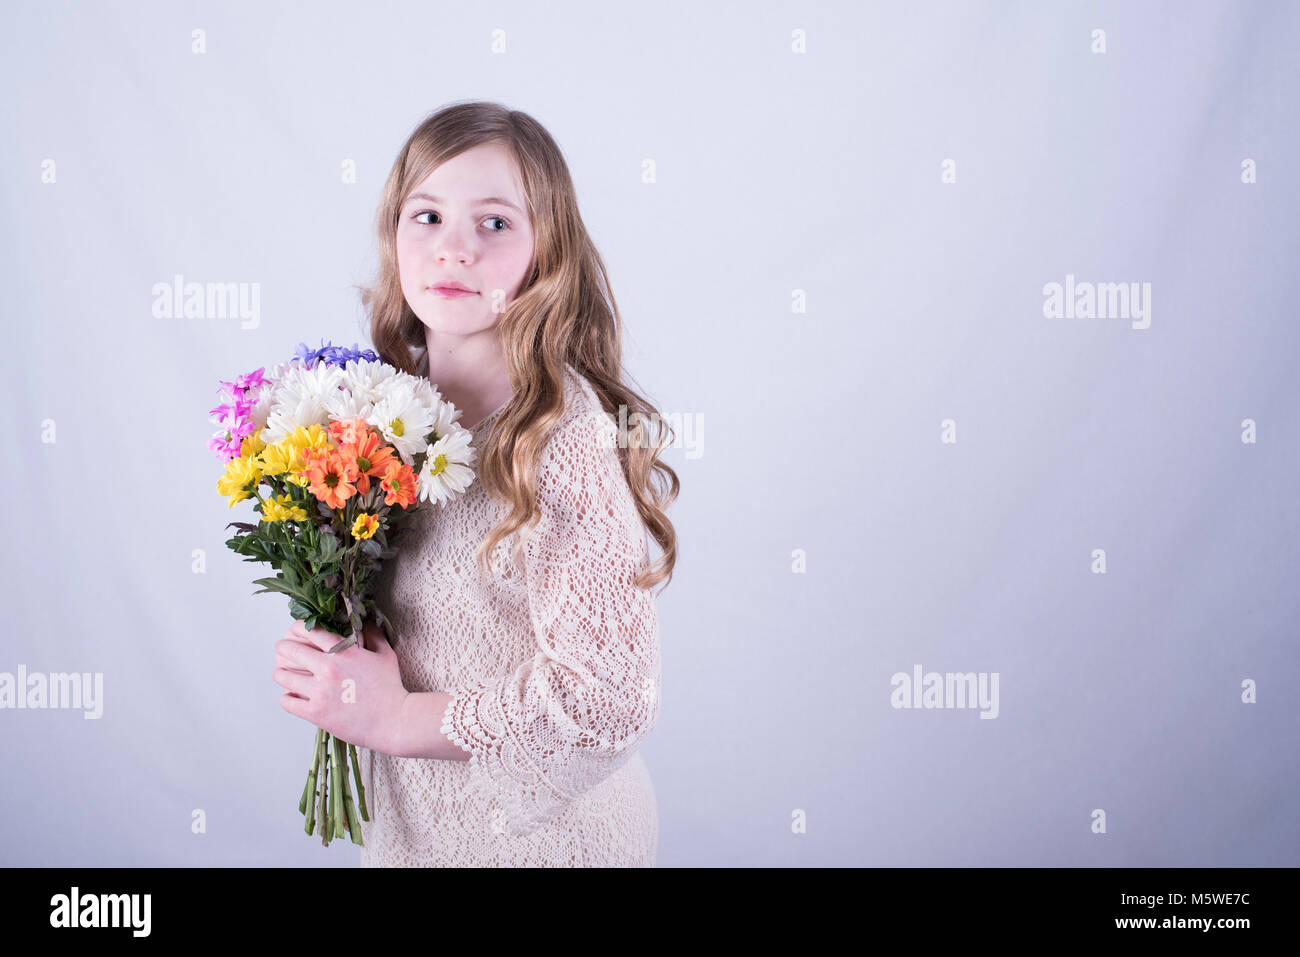 12-year-old girl con largo pelo rubio sucio, girada y celebración colorido bouquet de margaritas mientras mirando hacia el lado, fondo blanco. Foto de stock